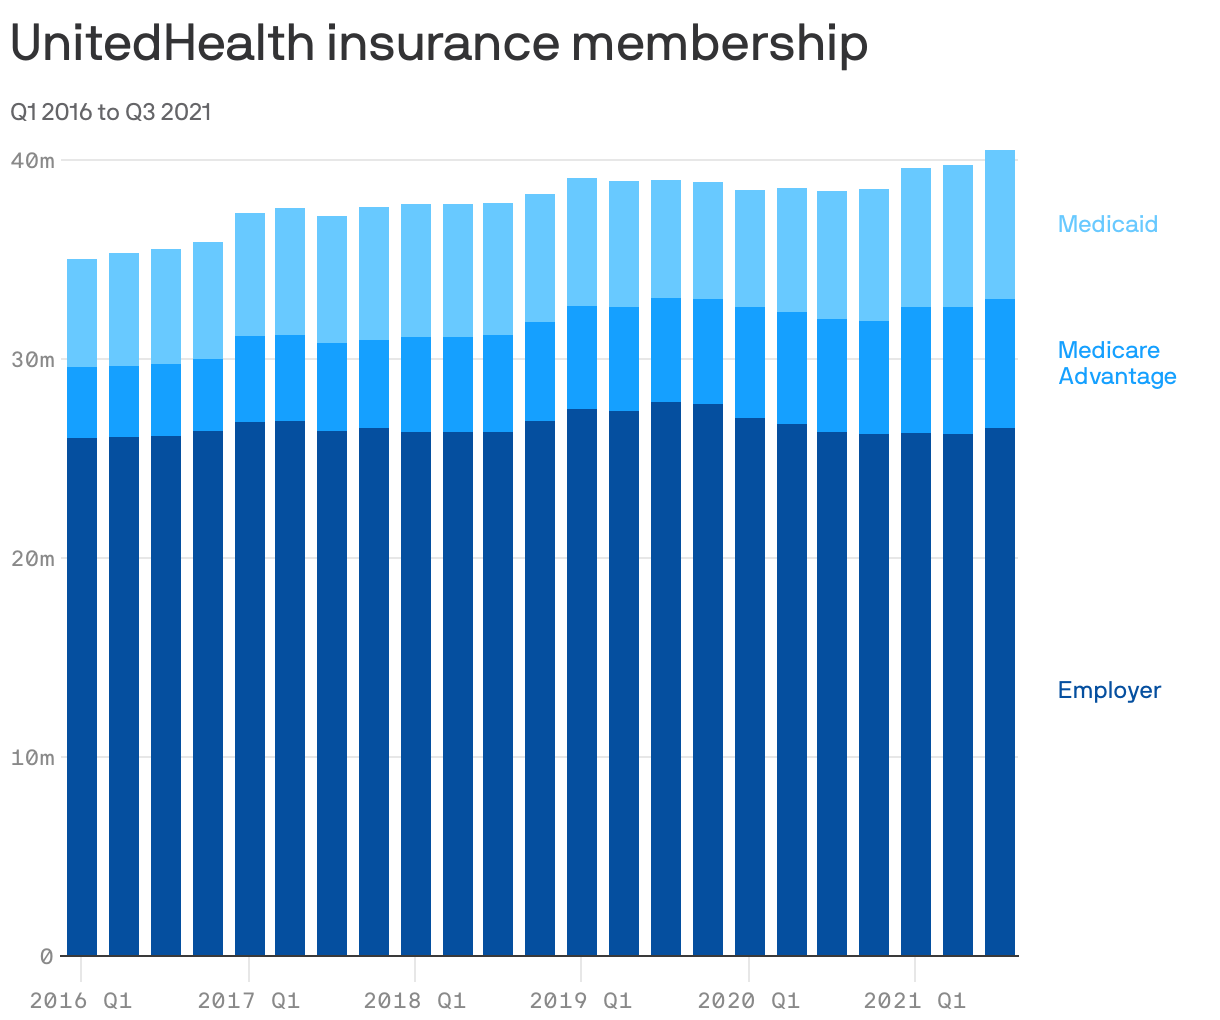 UnitedHealth insurance membership